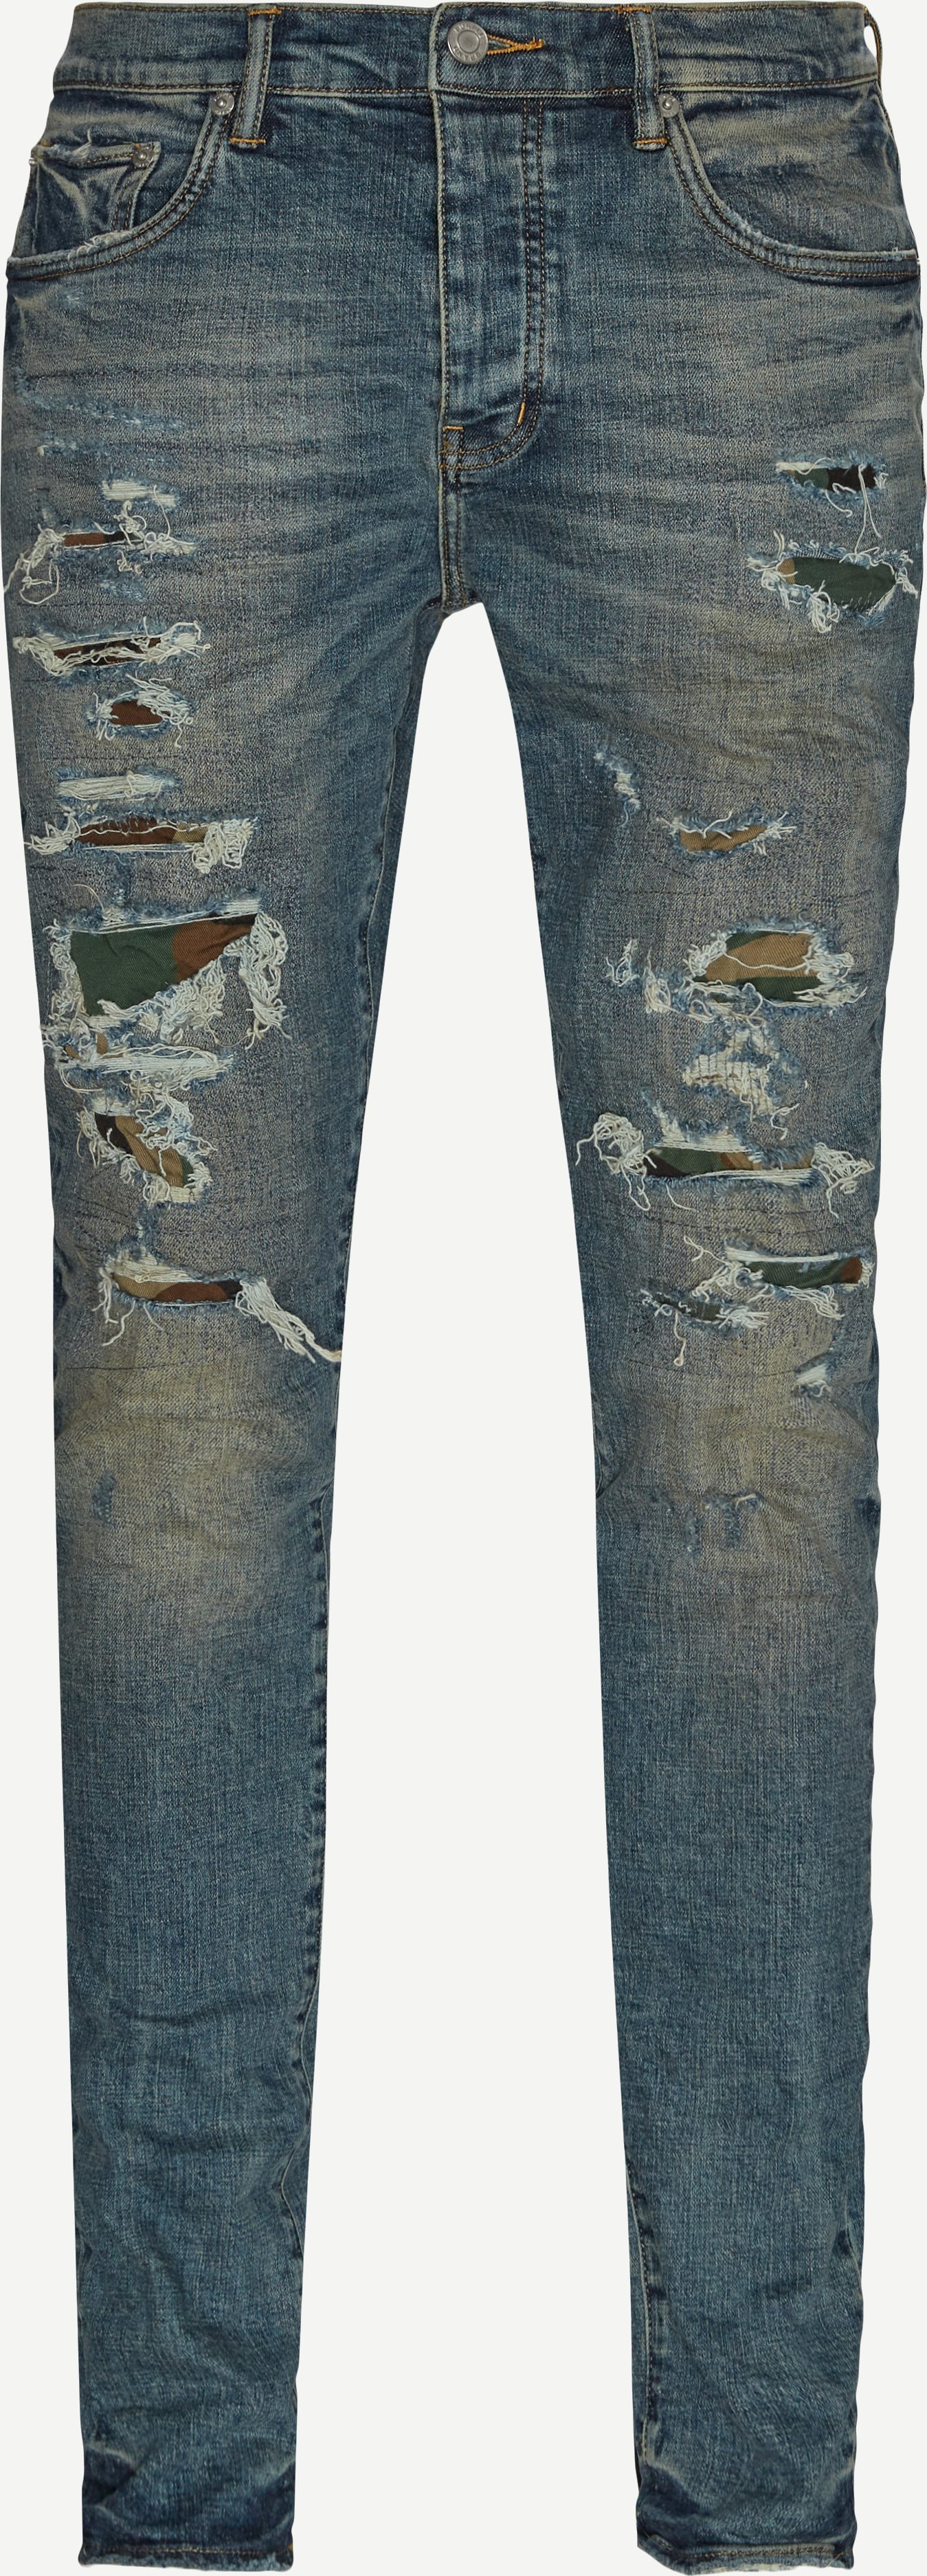 Mid Indigo Camo Repair Jeans - Jeans - Slim fit - Denim